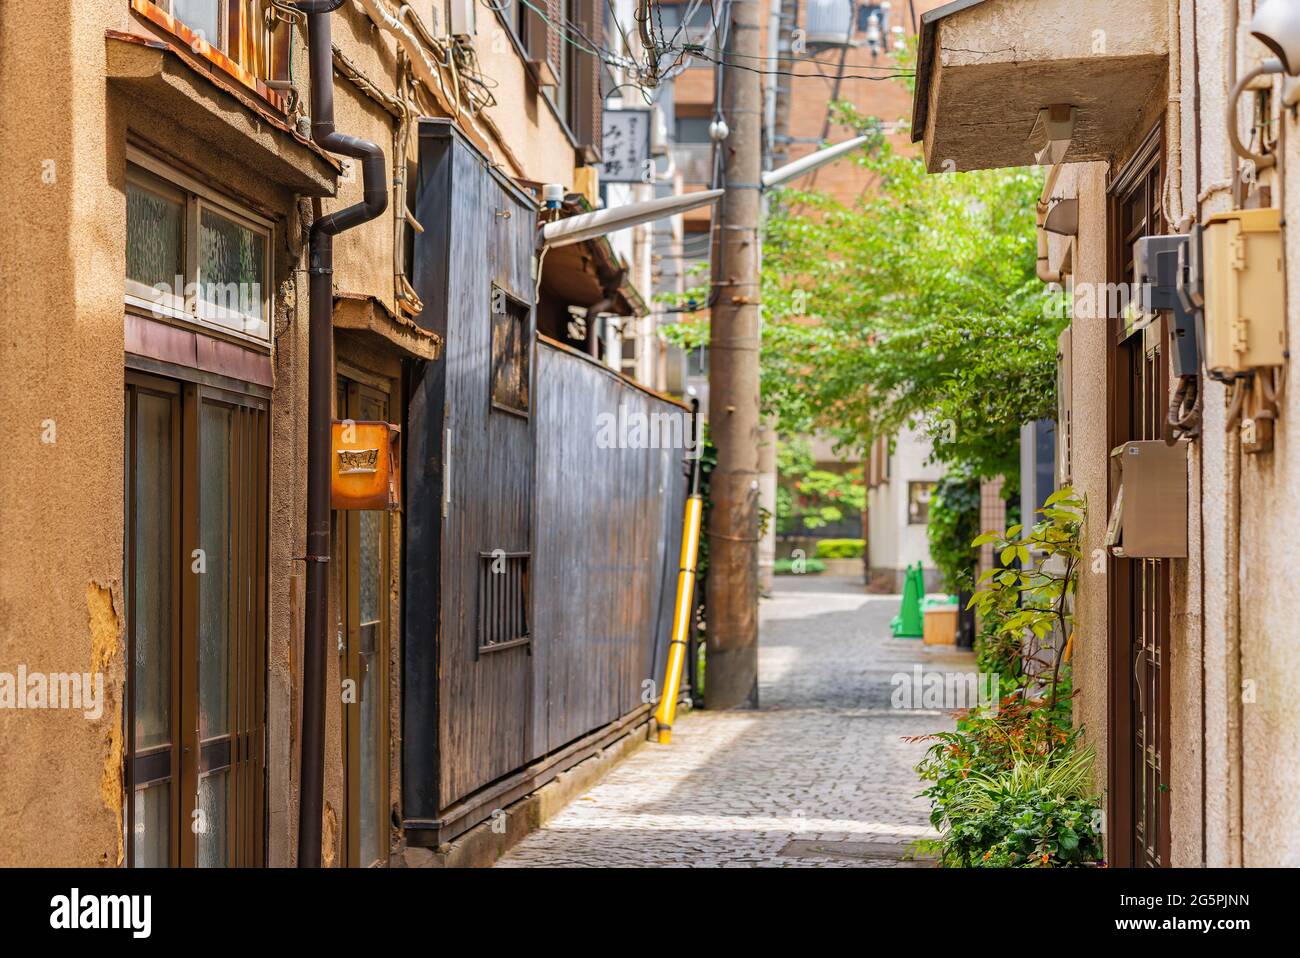 tokio, japan - 25 2021. juni: Alte Holz- und Stuckverputzfassaden der Gasse Kakurenbo yokocho, was Verstecken und Suchen in der alten Rotlichtgasse bedeutet Stockfoto